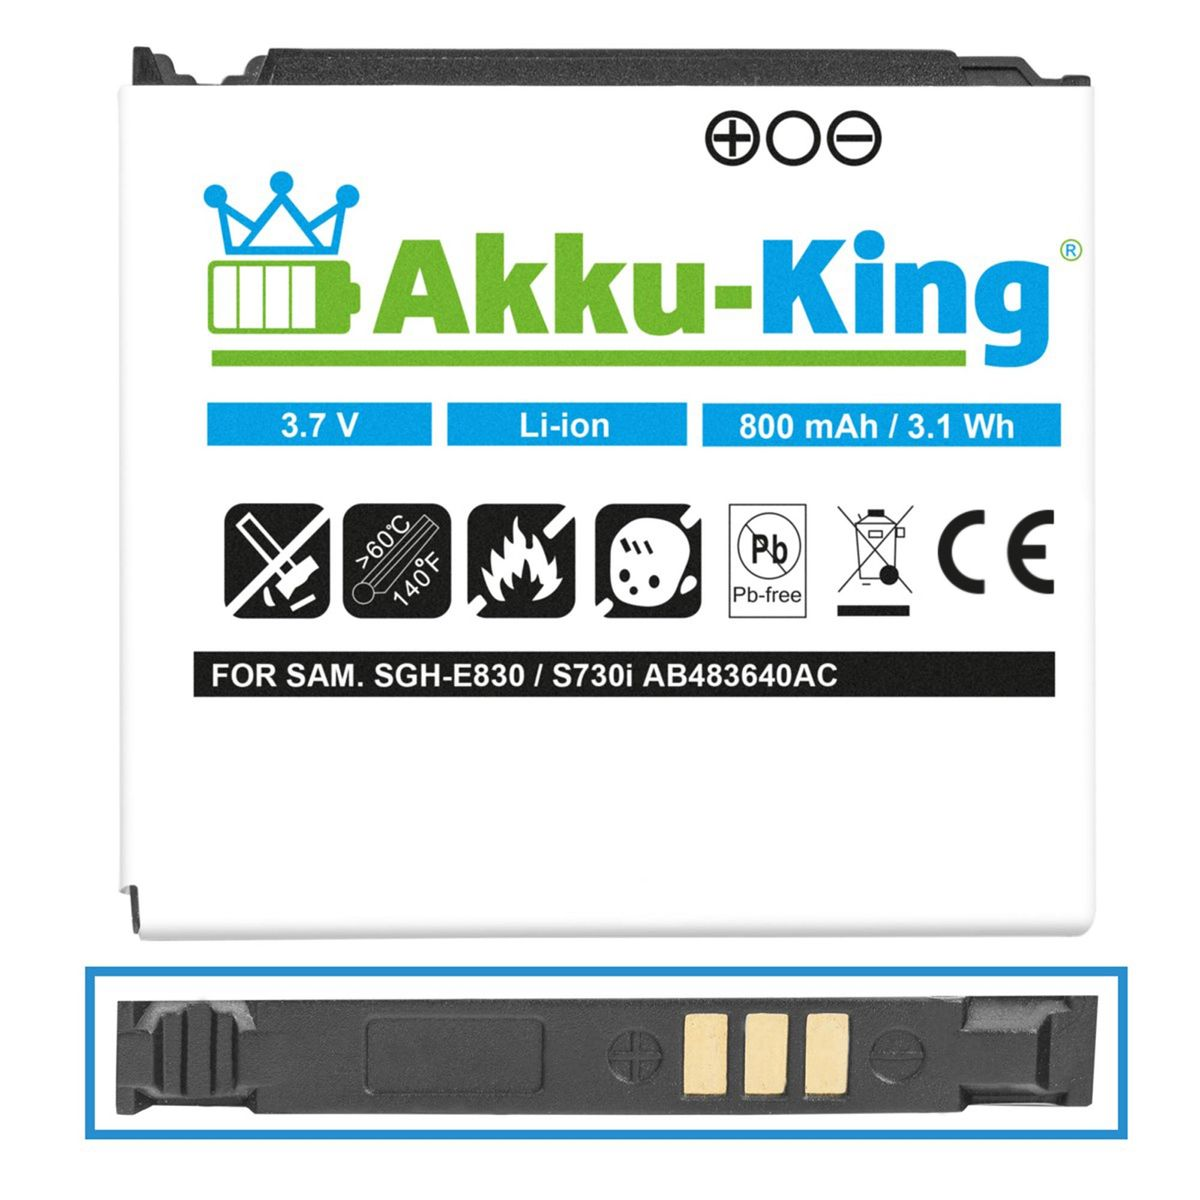 kompatibel mit Akku 3.7 Handy-Akku, Samsung AKKU-KING AB483640AE Volt, 800mAh Li-Ion